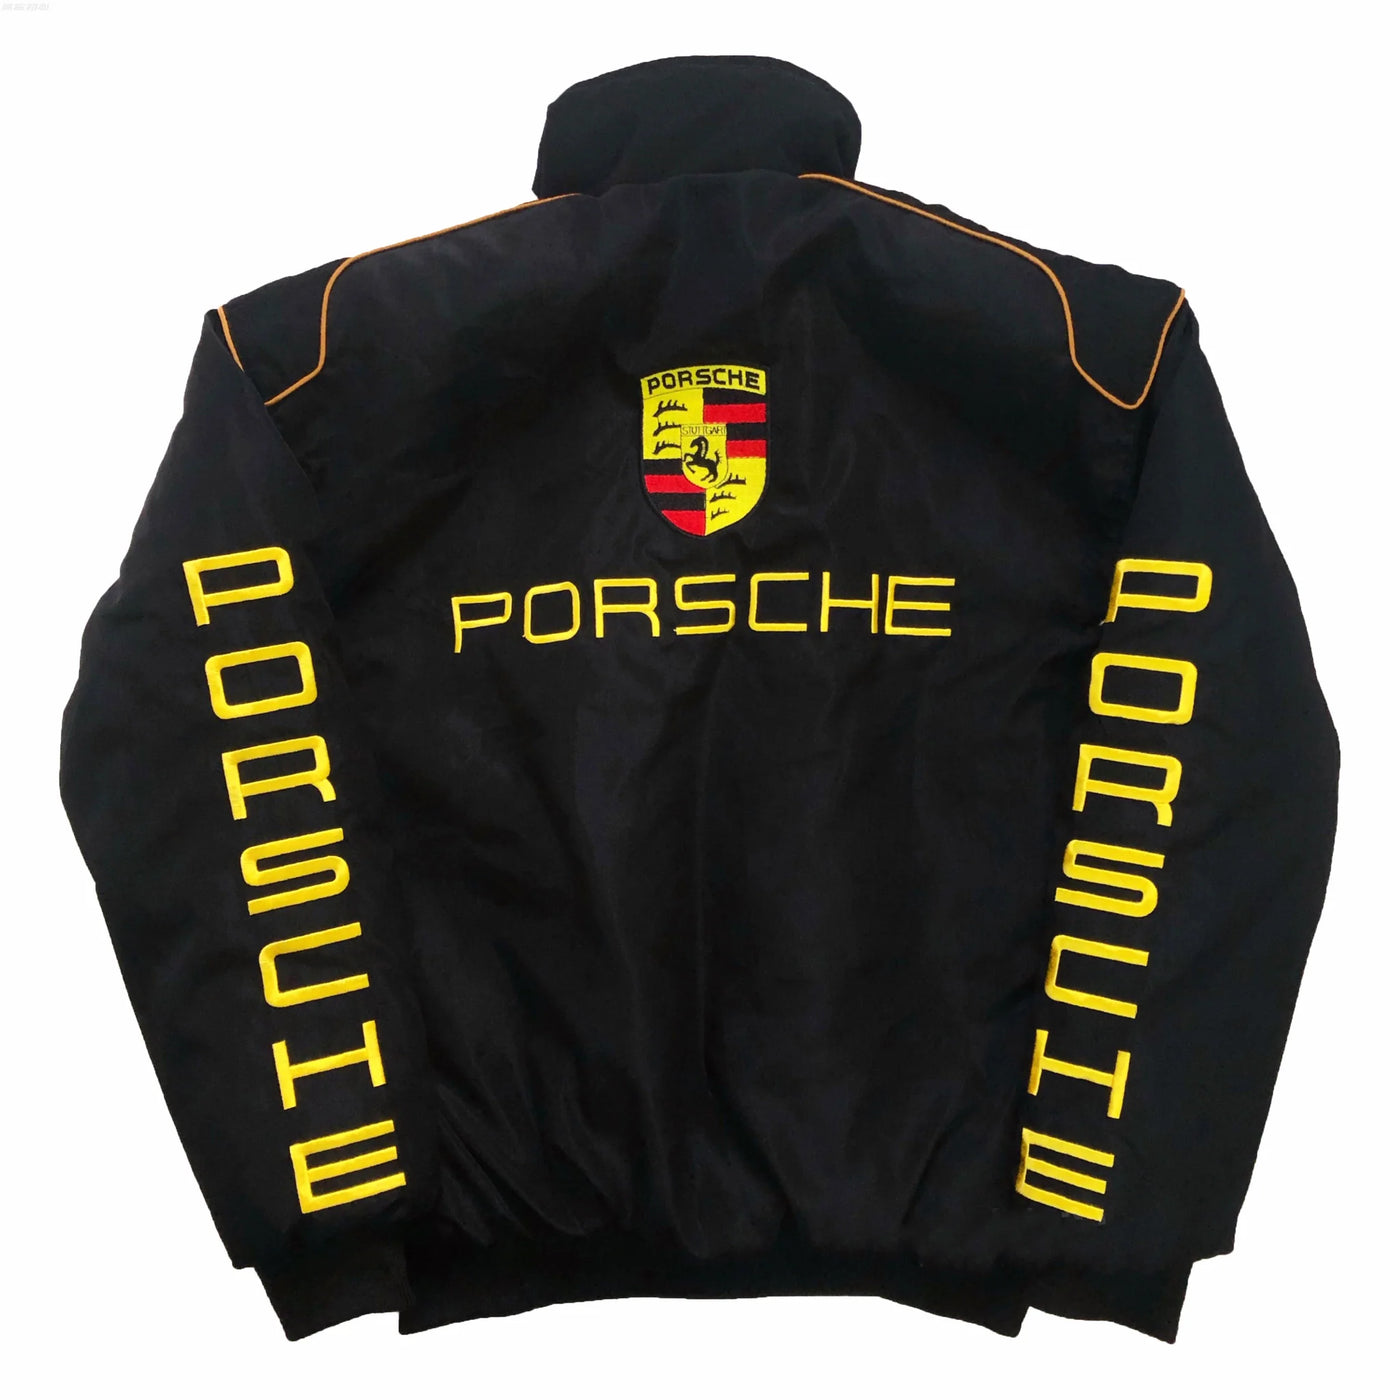 Vintage Racing Porsche Jacket